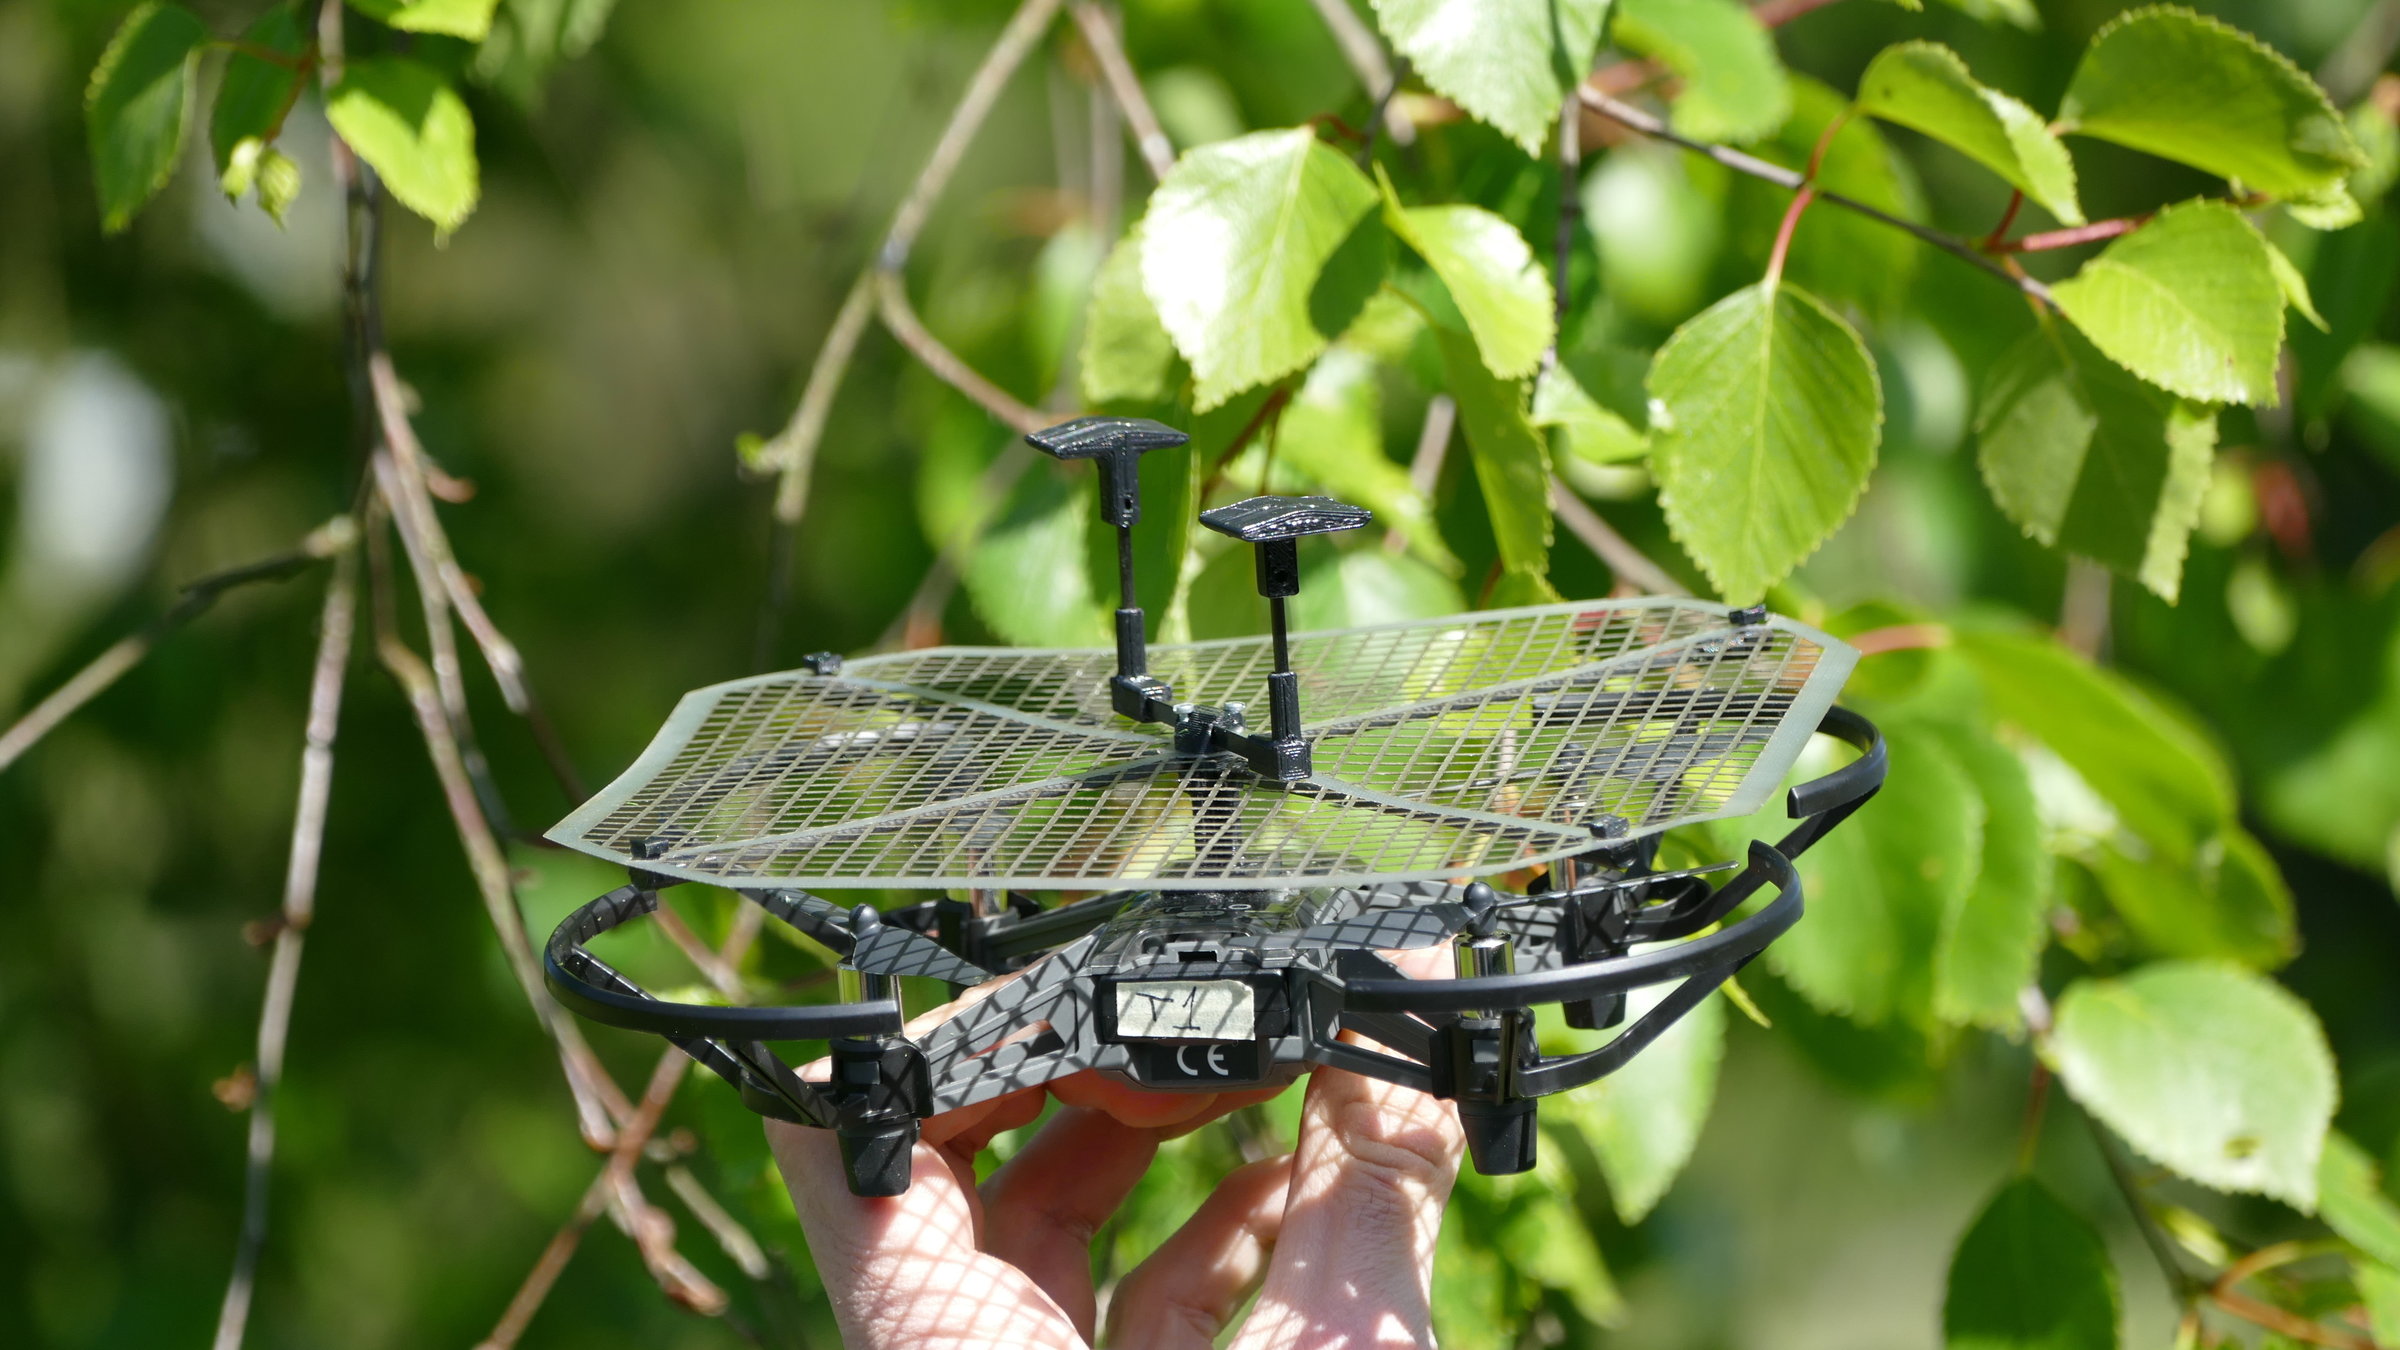 "planet e.: Roboter als Retter? Umweltschutz mit Maschinen": Eine Drohne in Nahaufnahme vor Blättern.